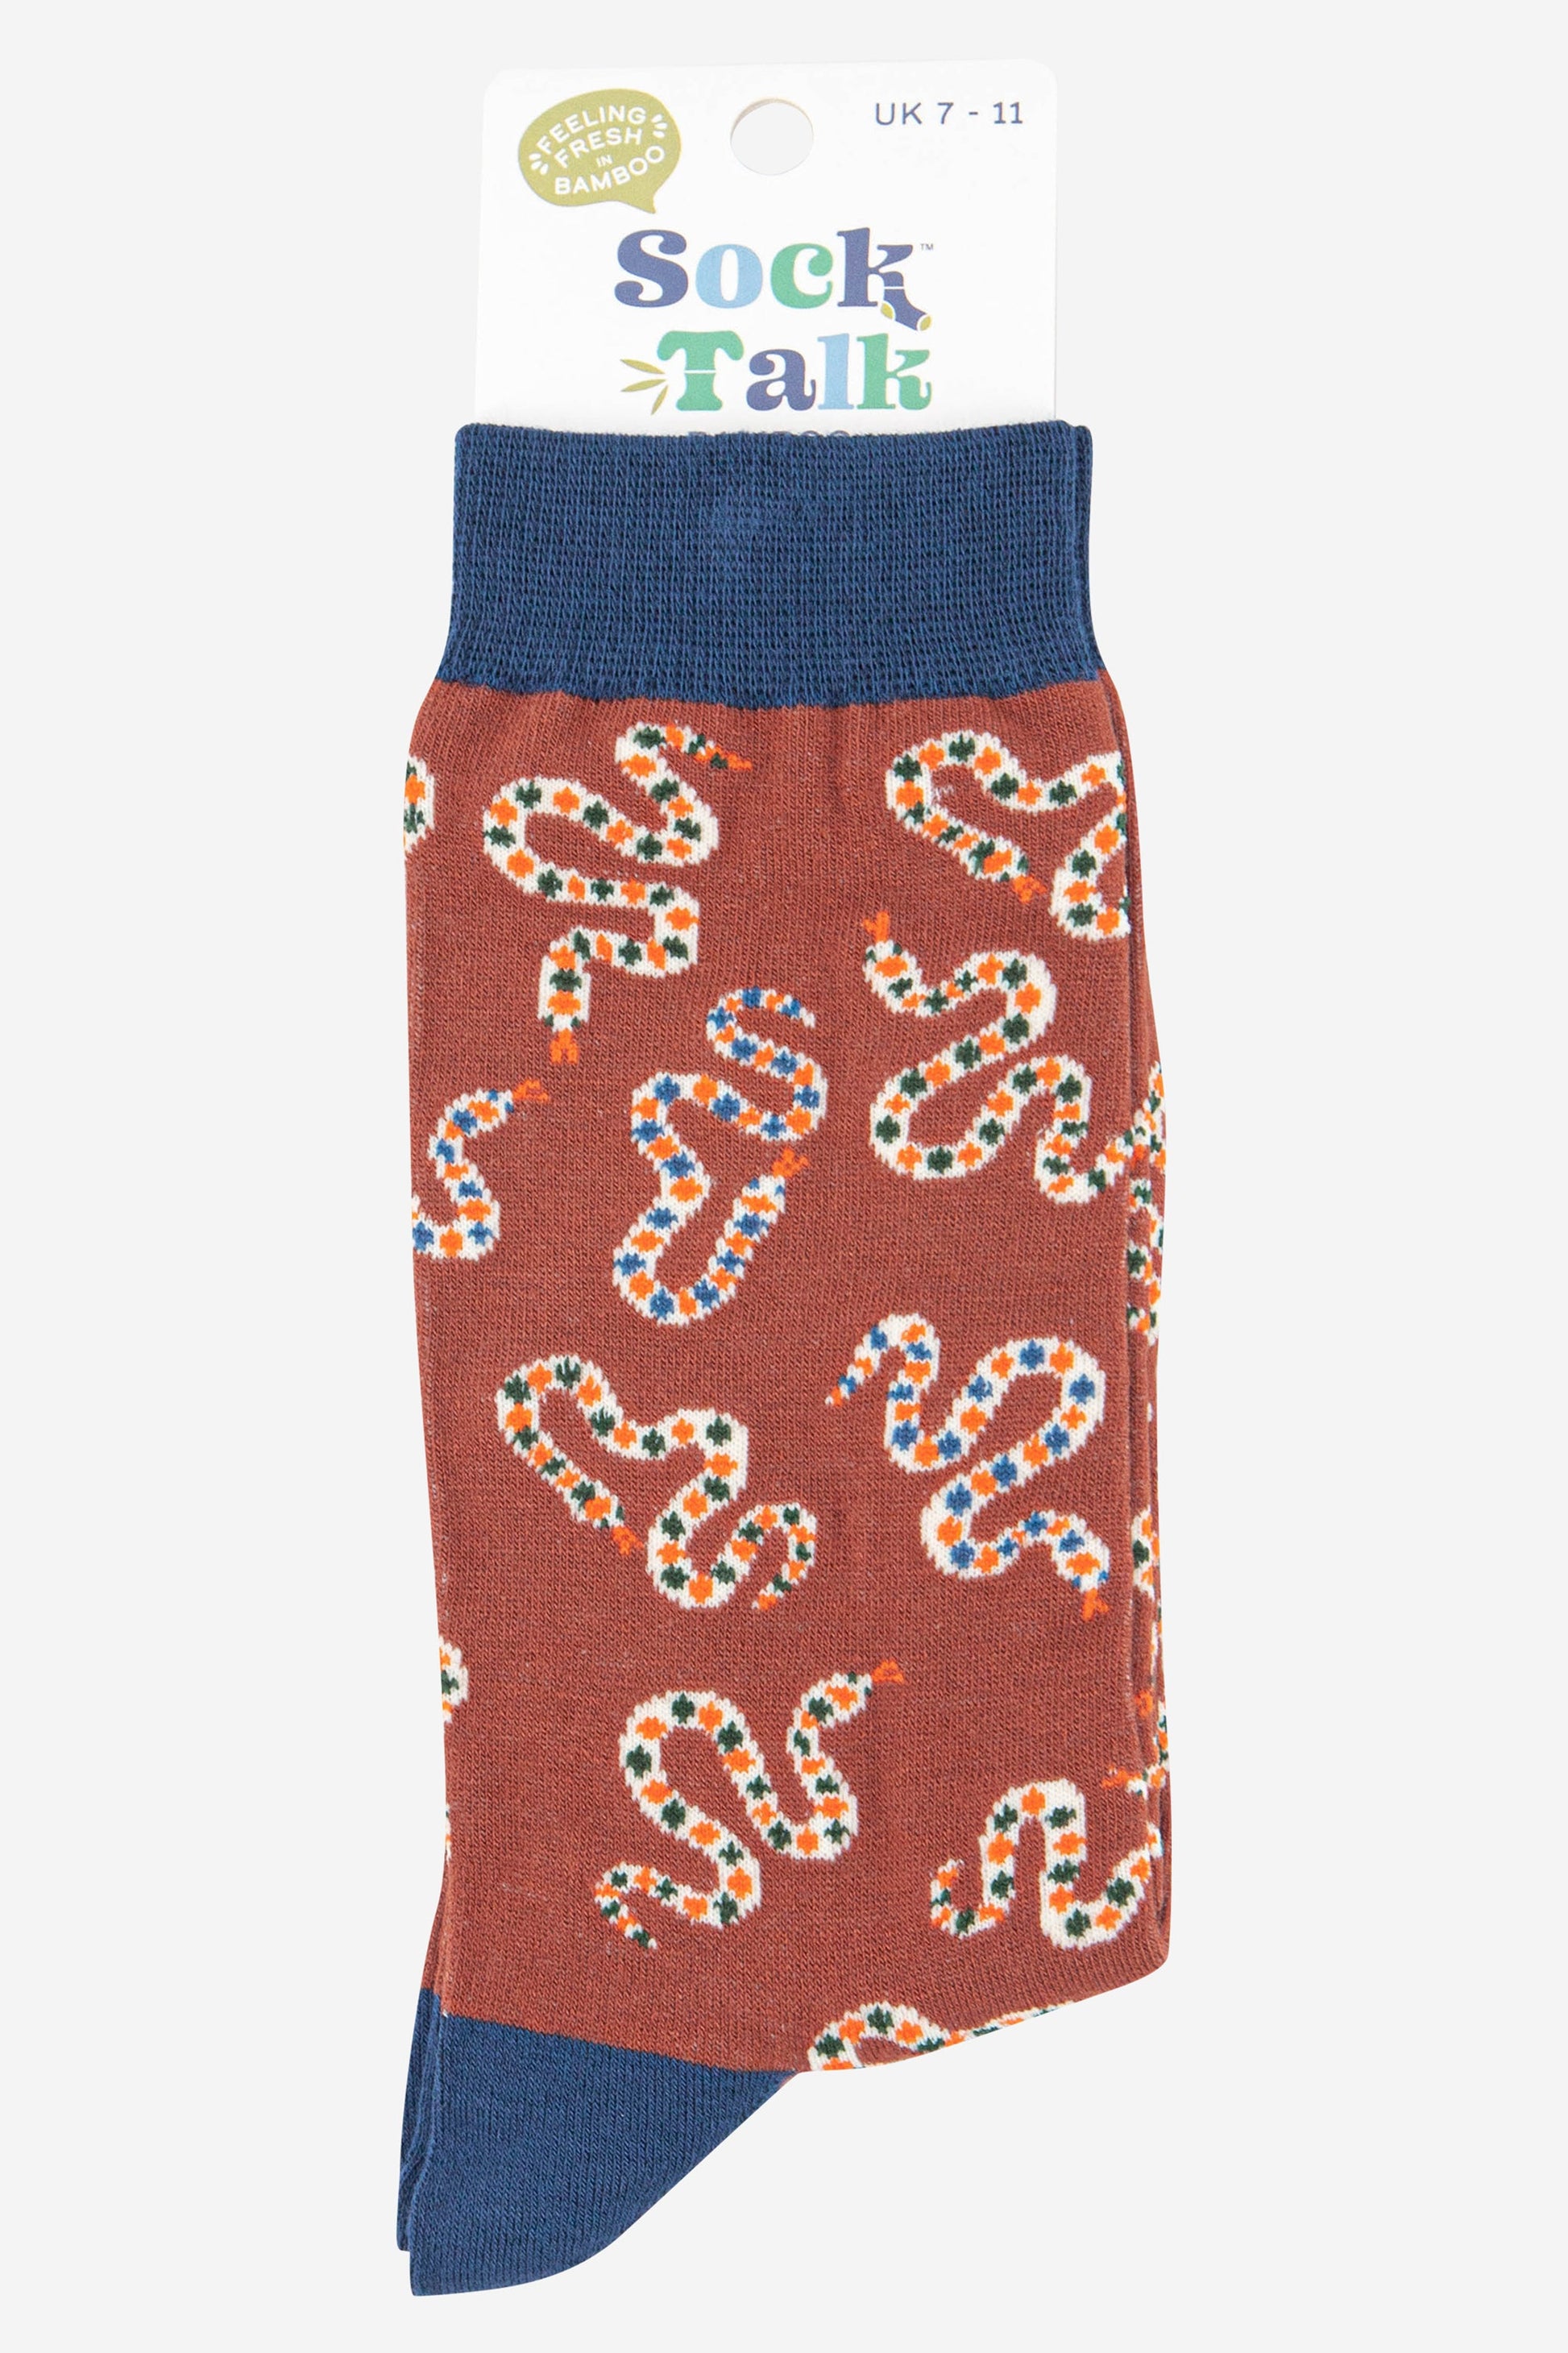 mens bamboo snake print socks uk size 7-11